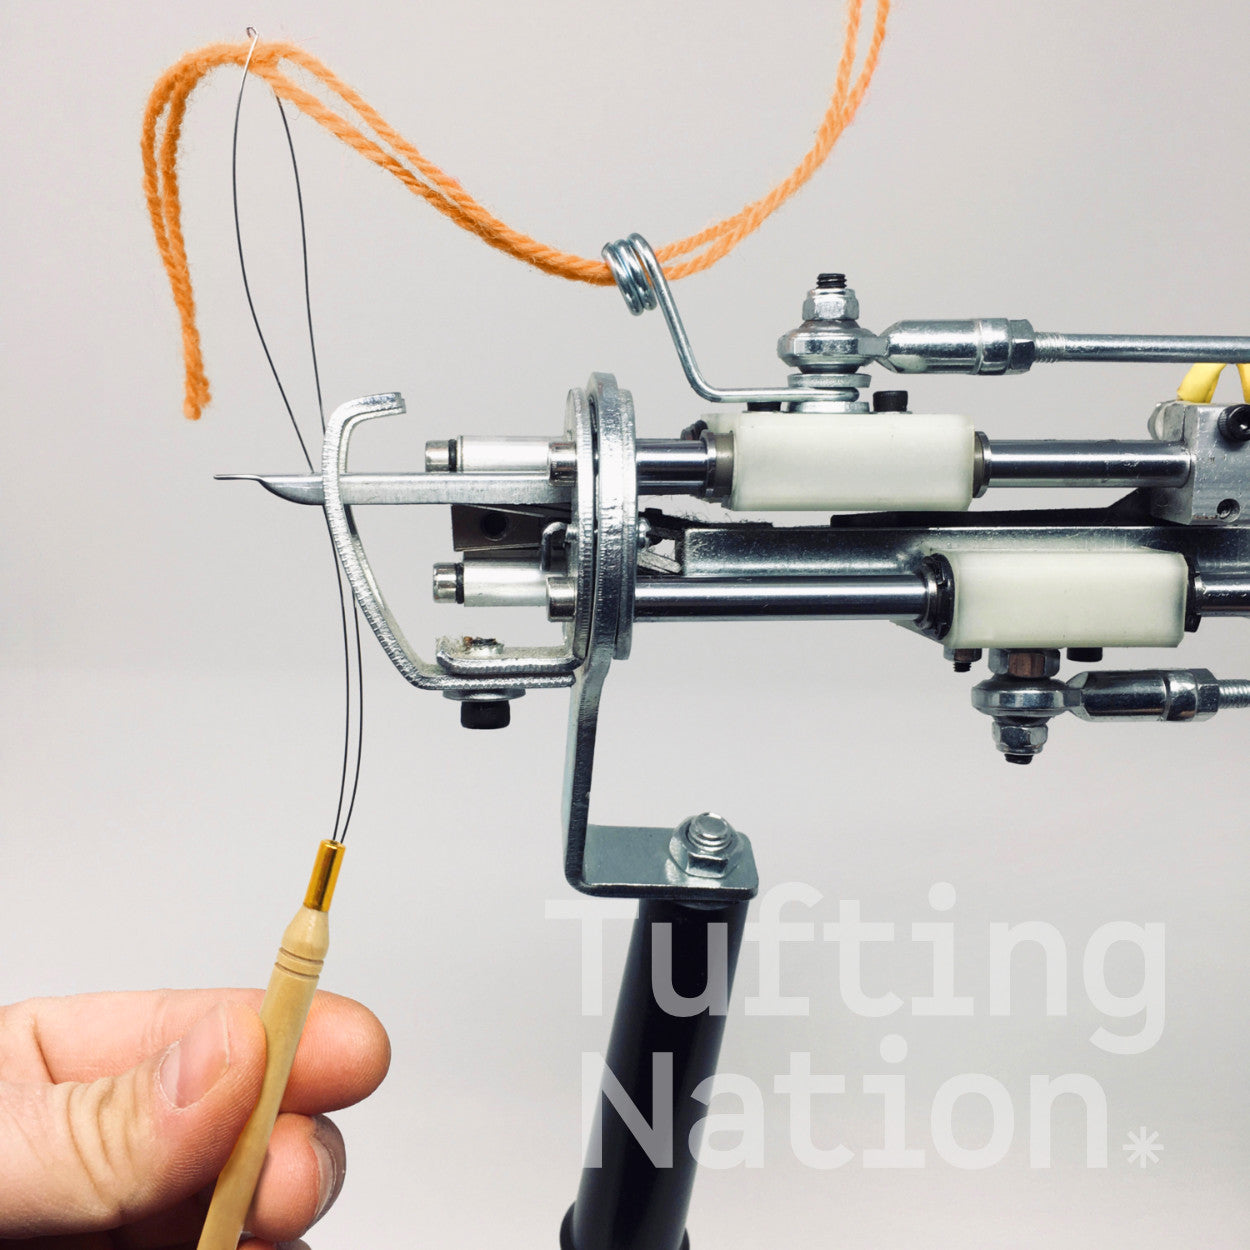 Yarn tool threading a tufting gun  | TuftingNation Canada 